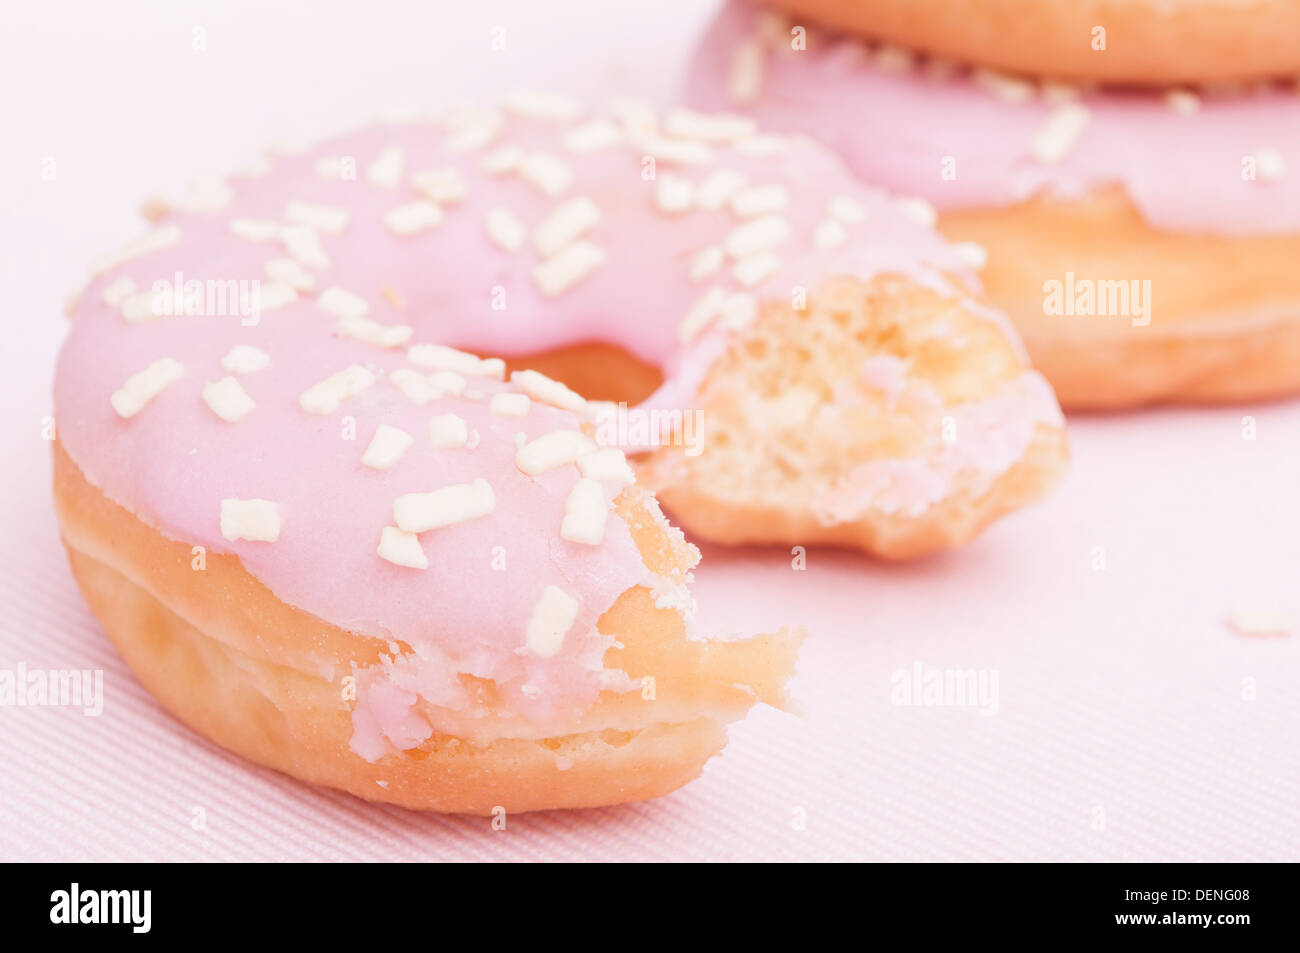 Acercamiento de donuts caseros con glaseado rosa - Profundidad de campo Foto de stock